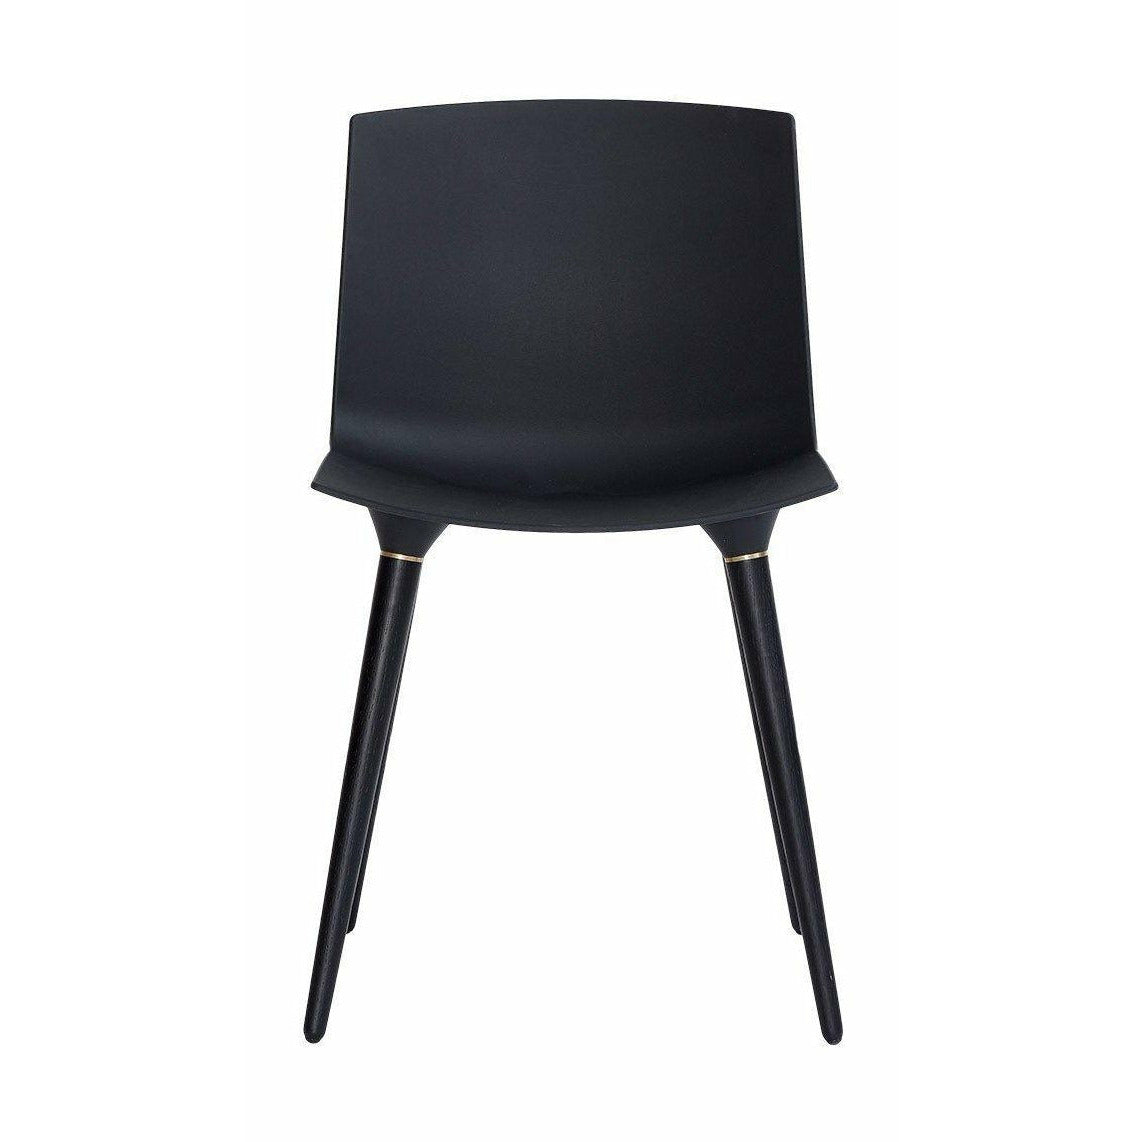 Chaise de meuble Andersen chaise laquée noire, siège en plastique noir